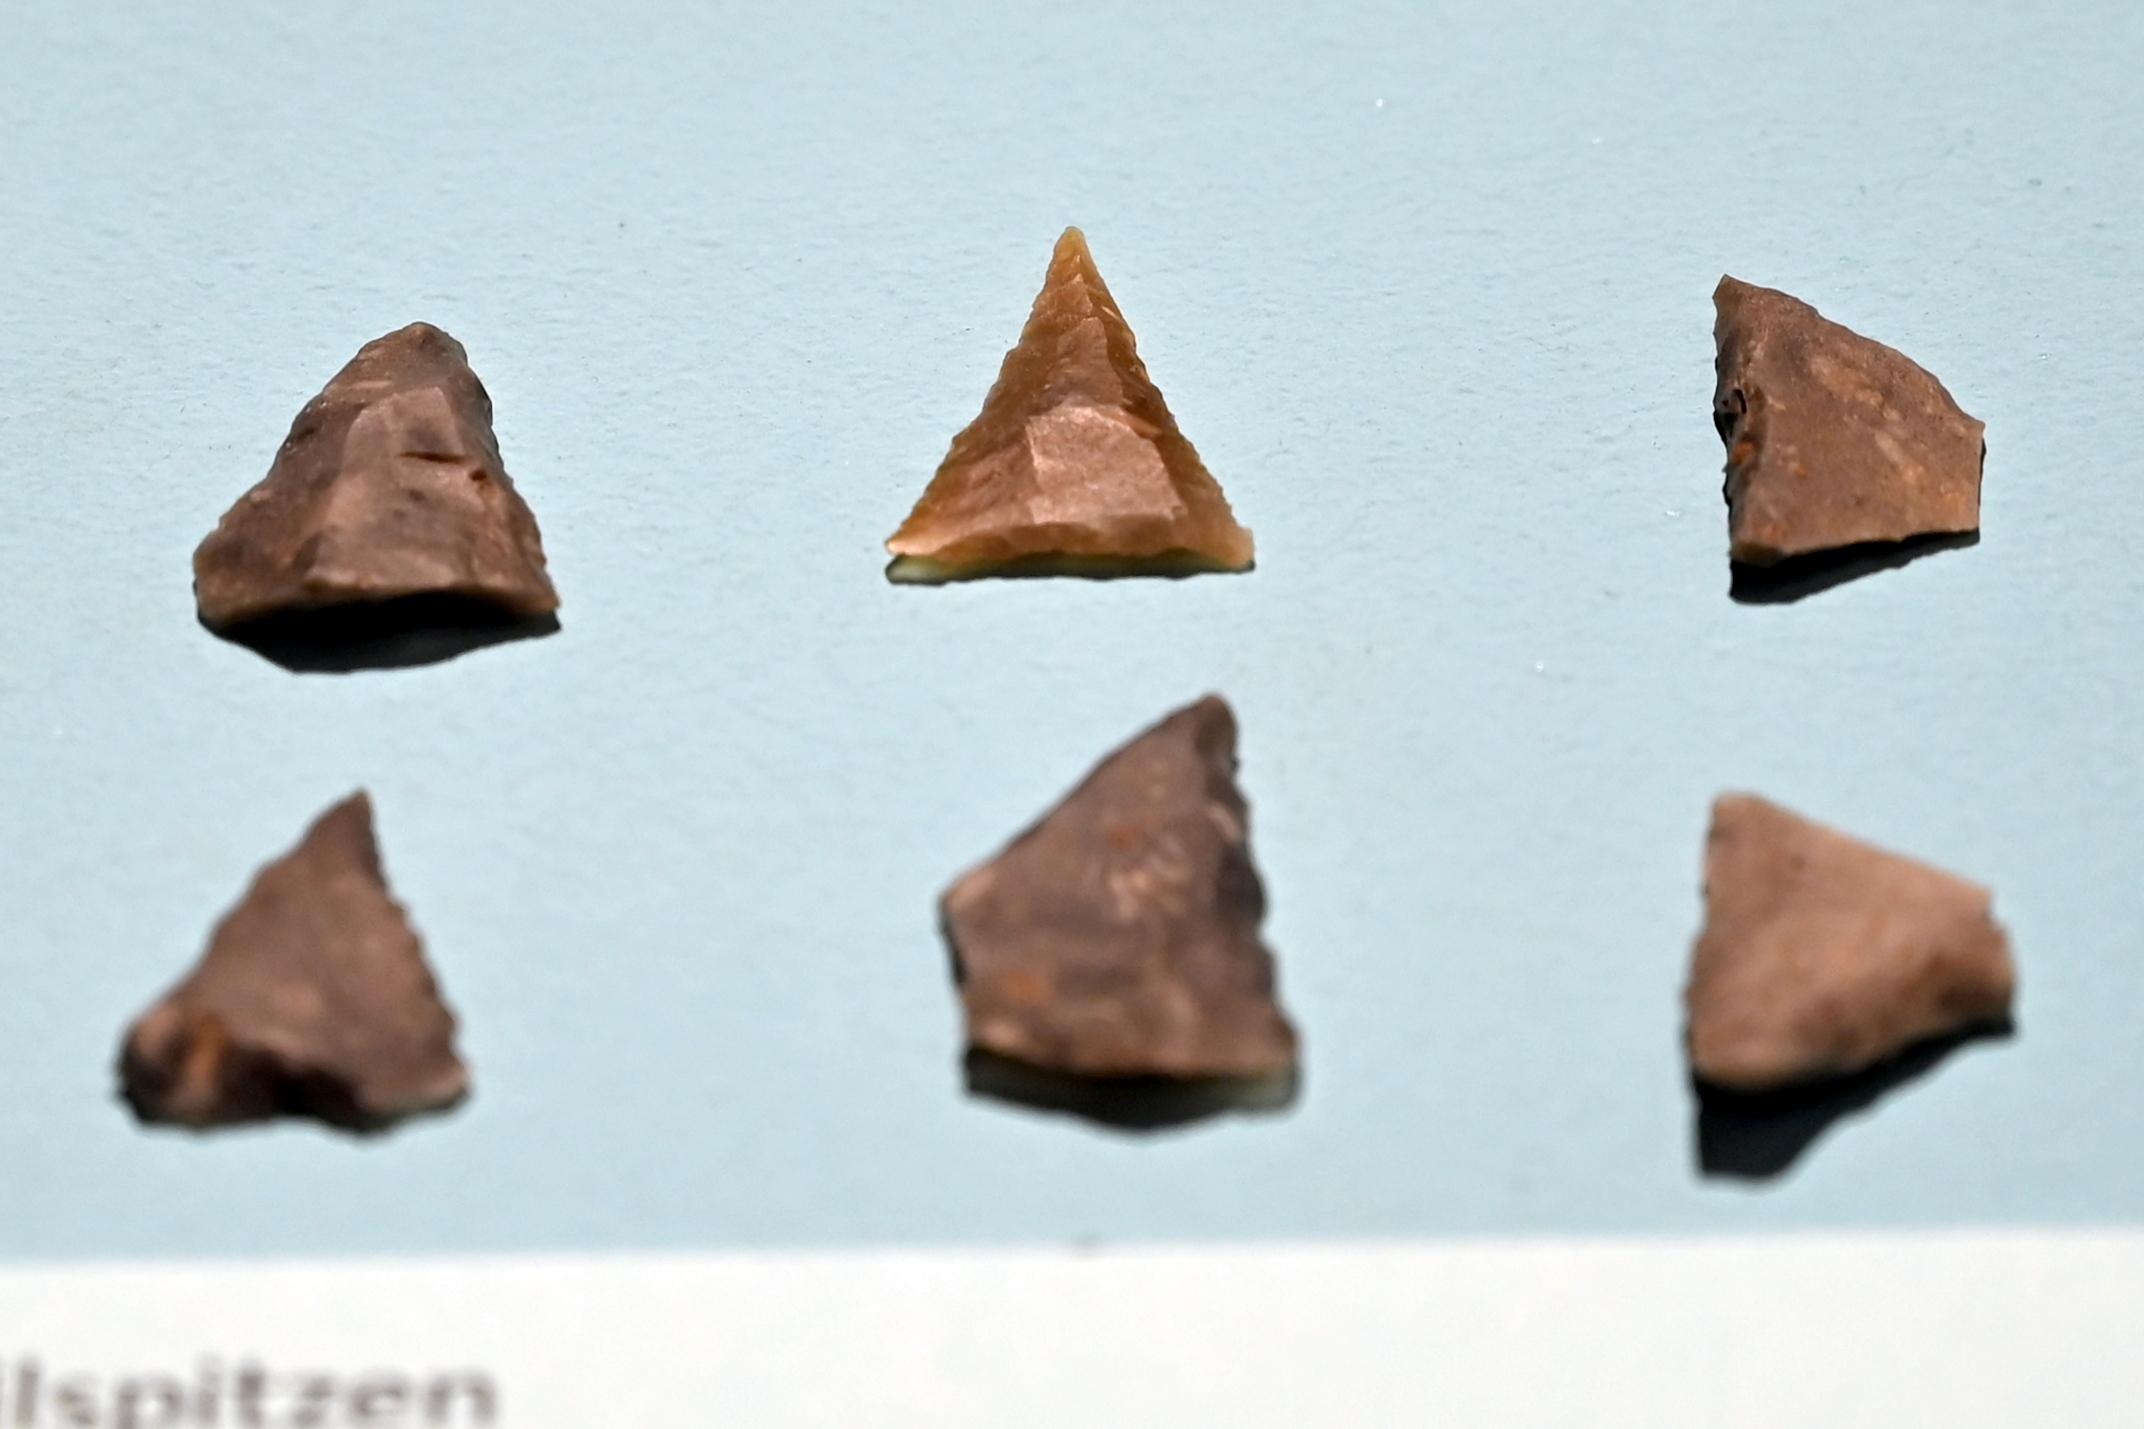 Pfeilspitzen, Neolithikum (Jungsteinzeit), 5500 - 1700 v. Chr., 5090 - 5050 v. Chr.